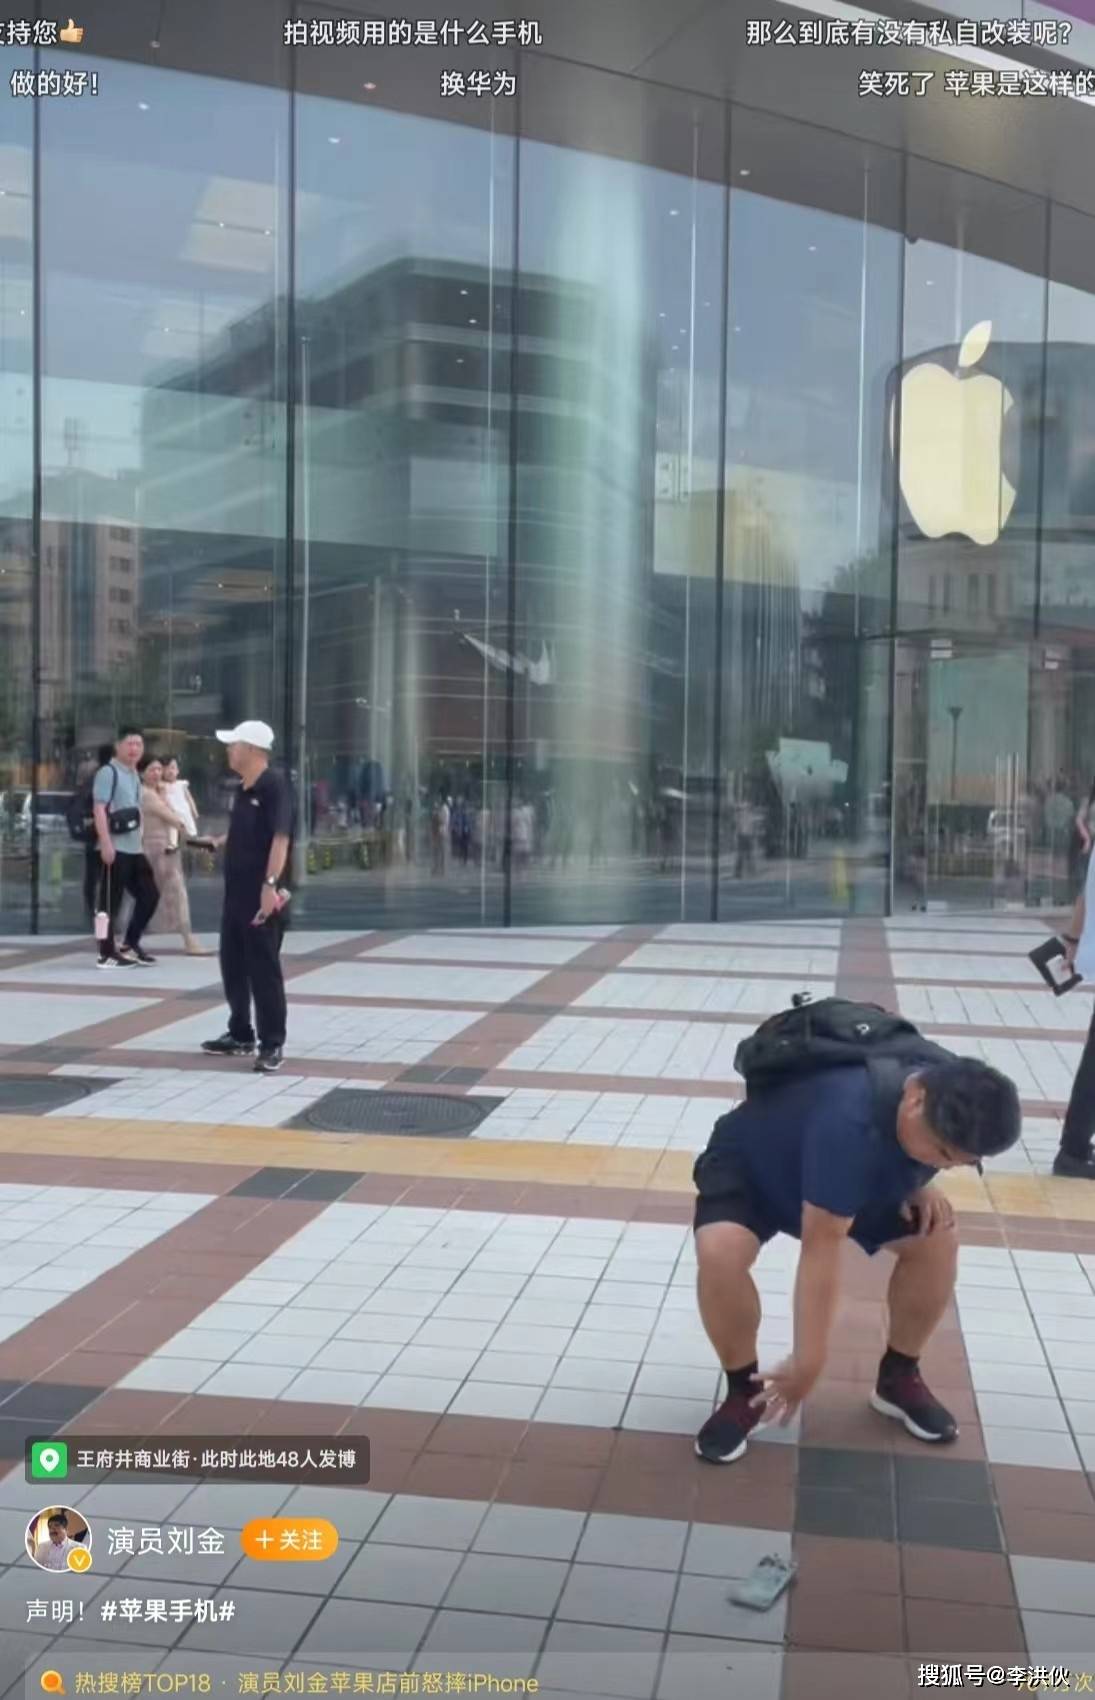 啥操作？刘金在苹果专卖店门口怒砸手机，又用苹果手机发了条动态  第1张